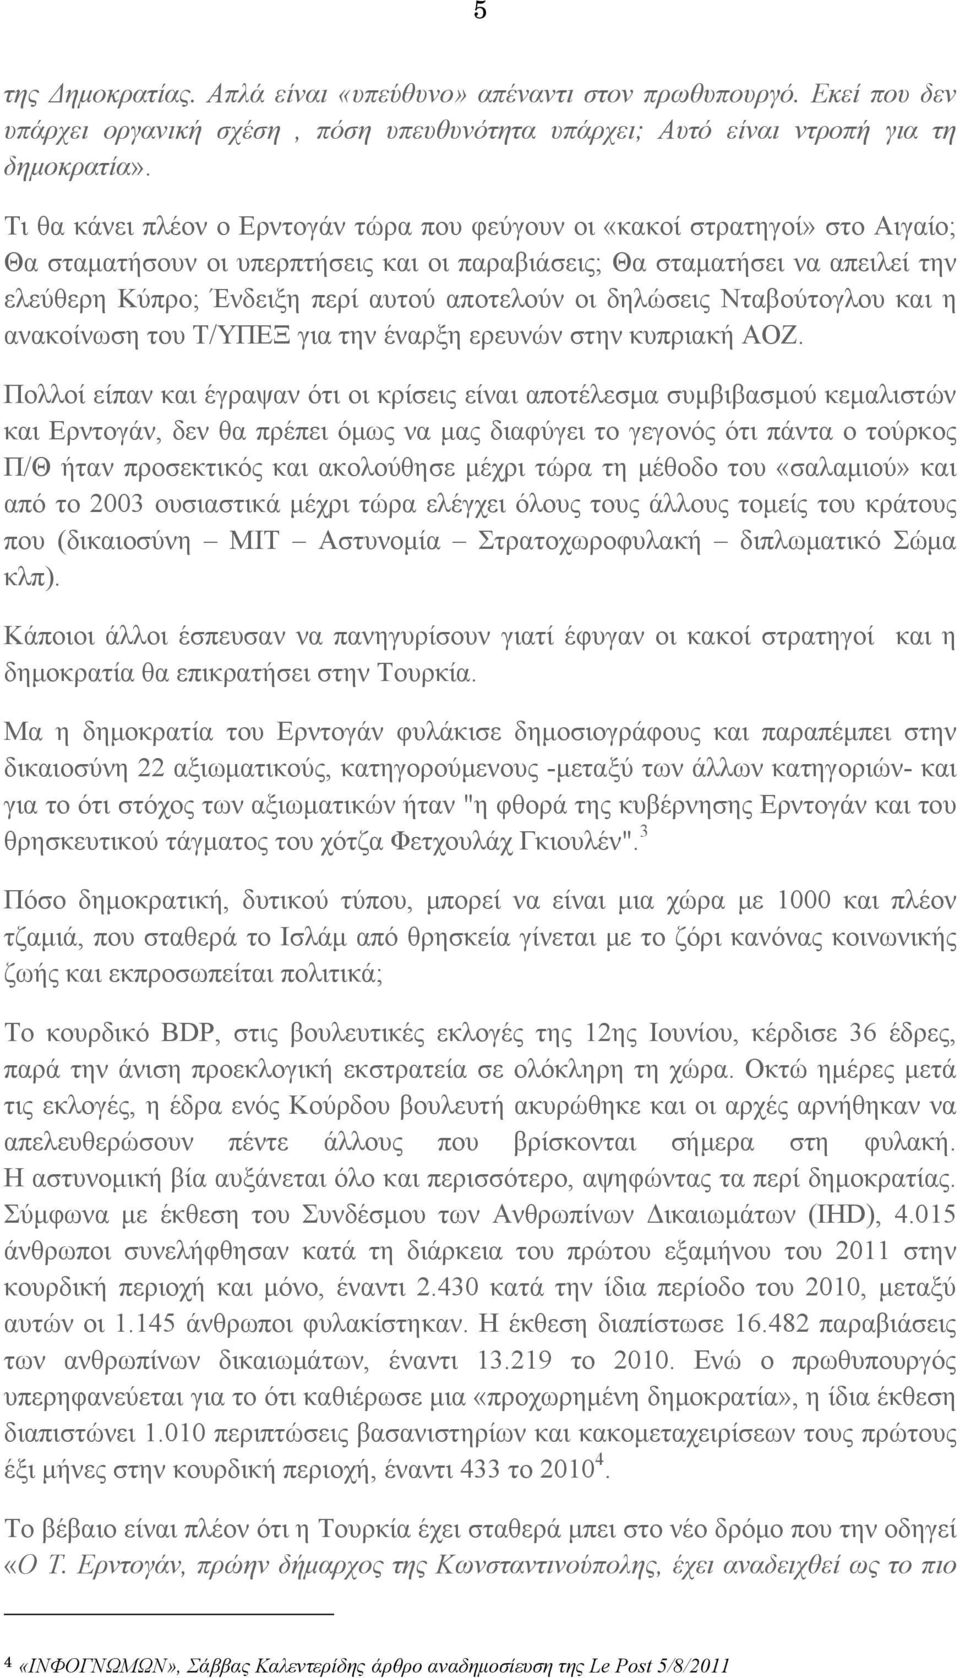 αποτελούν οι δηλώσεις Νταβούτογλου και η ανακοίνωση του Τ/ΥΠΕΞ για την έναρξη ερευνών στην κυπριακή ΑΟΖ.